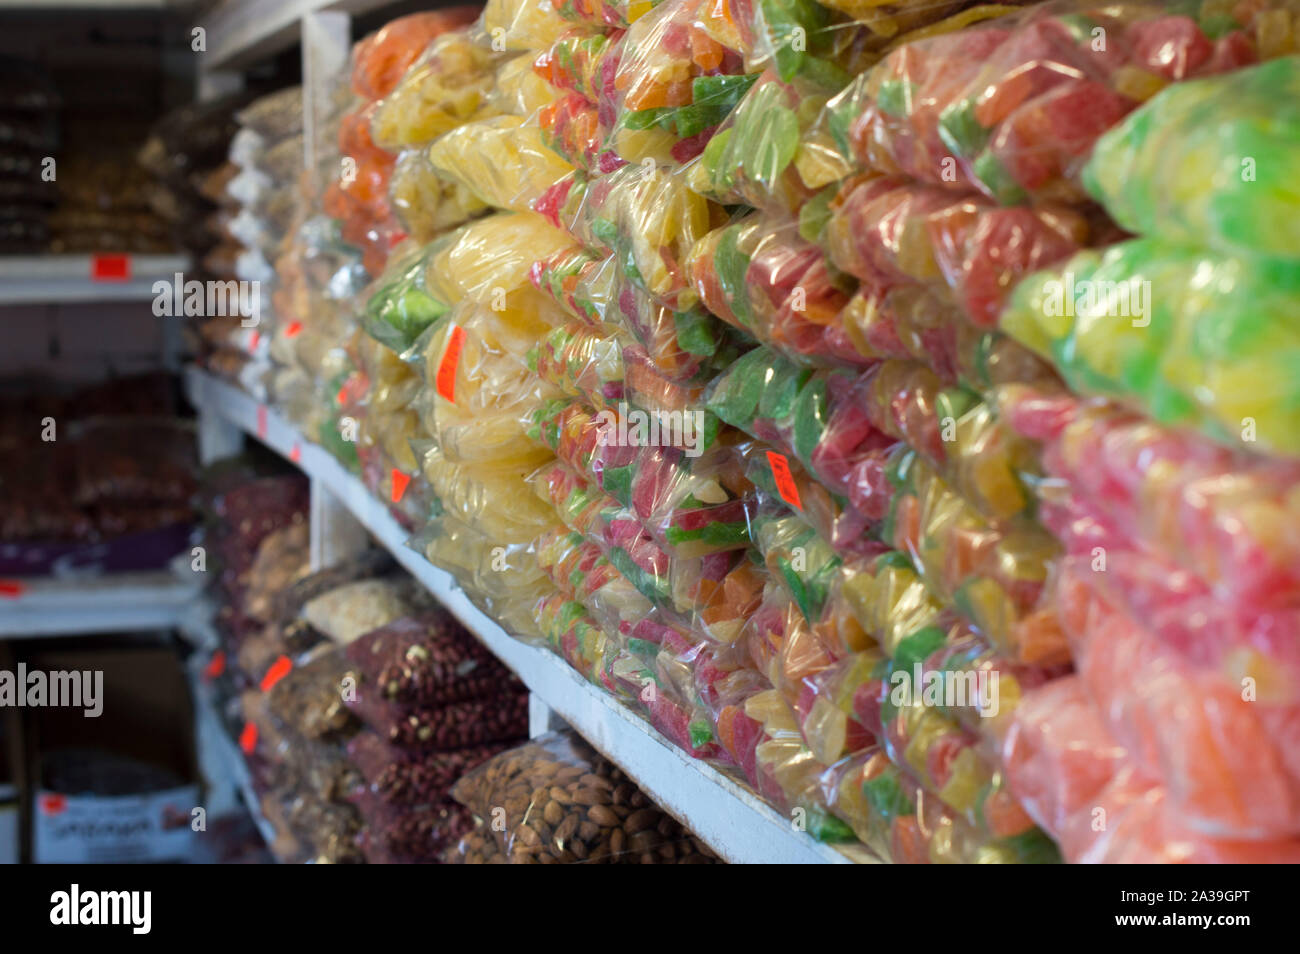 Zahlreiche Sorten von Nüsse und getrocknete Früchte sind auf Speicherregalen zu verkaufen. Russland. Stockfoto